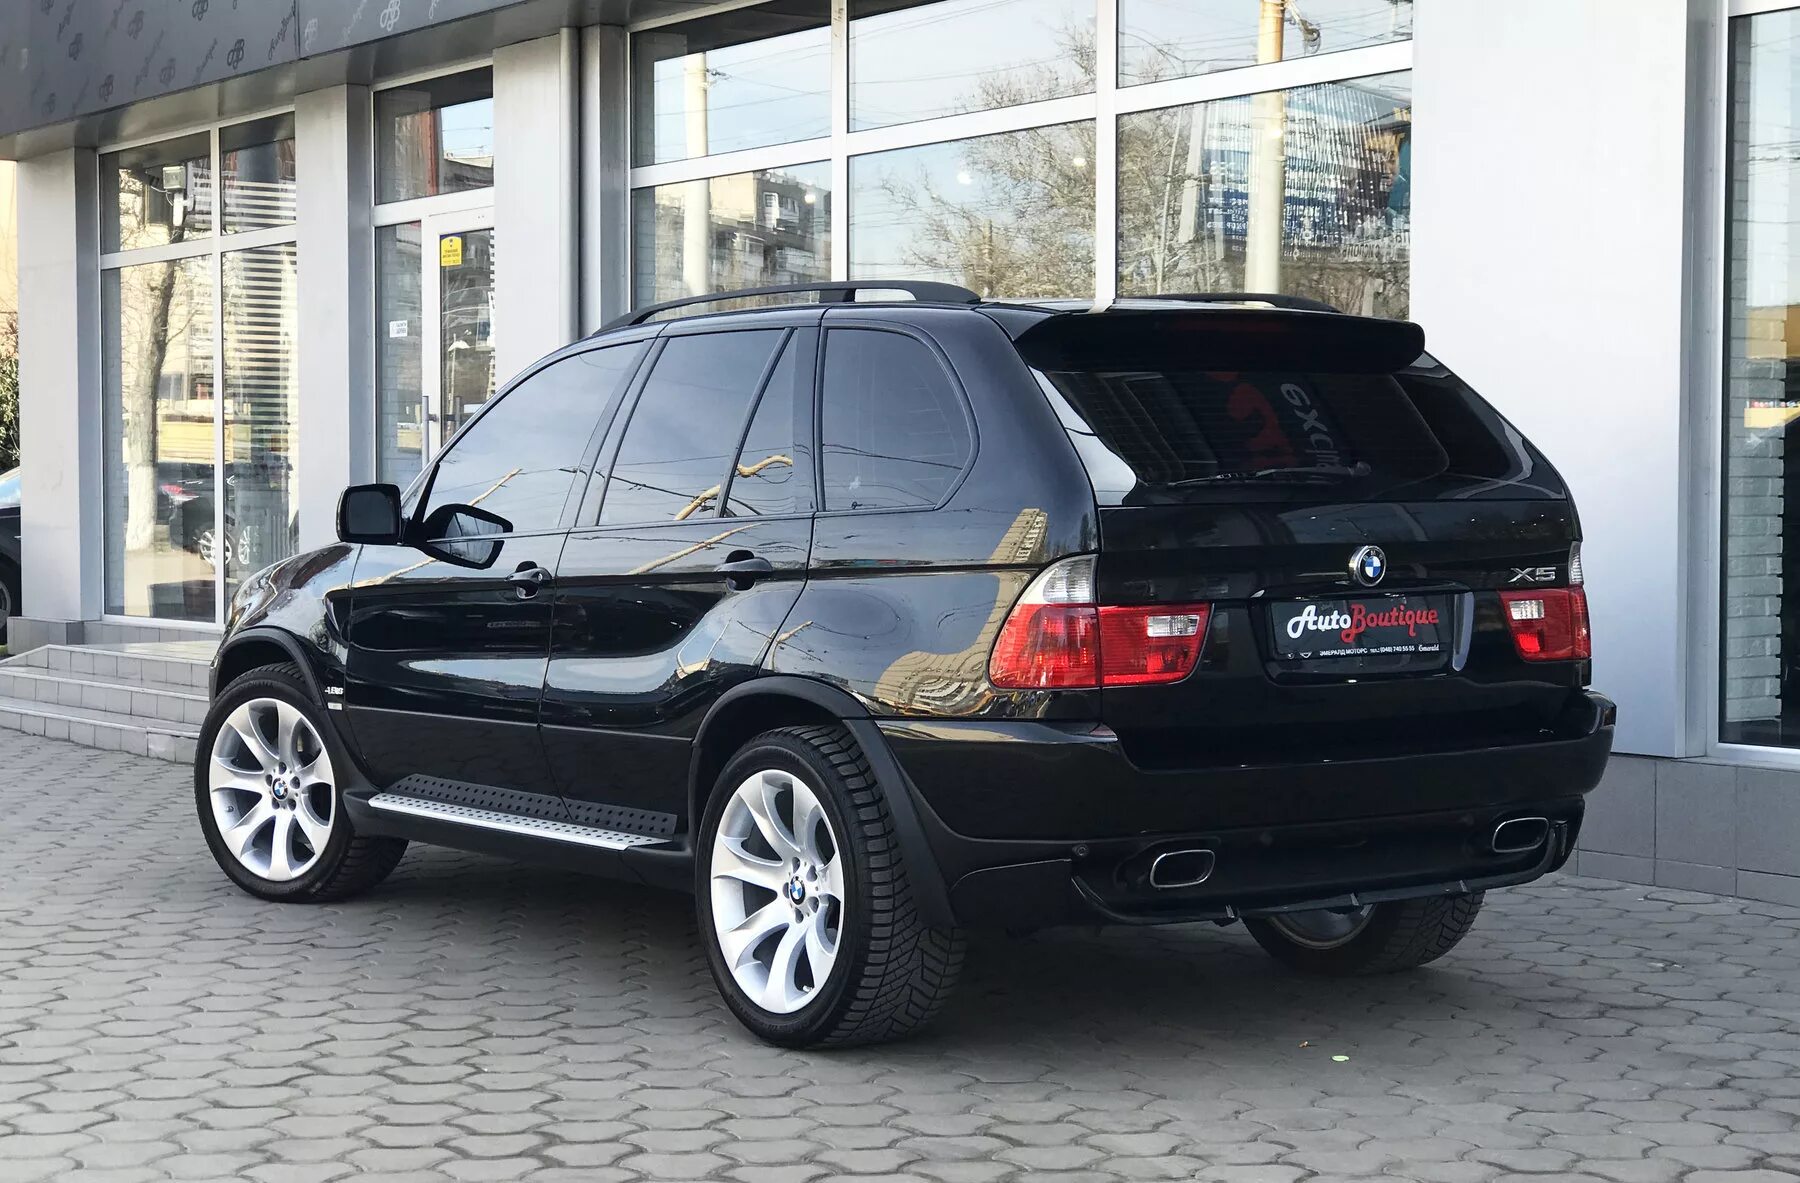 БМВ х5 е53 4.8. BMW x5 2004 4.8. X5 BMW x5 2005. BMW x5 2005 черный. Купить бмв х5 4.4